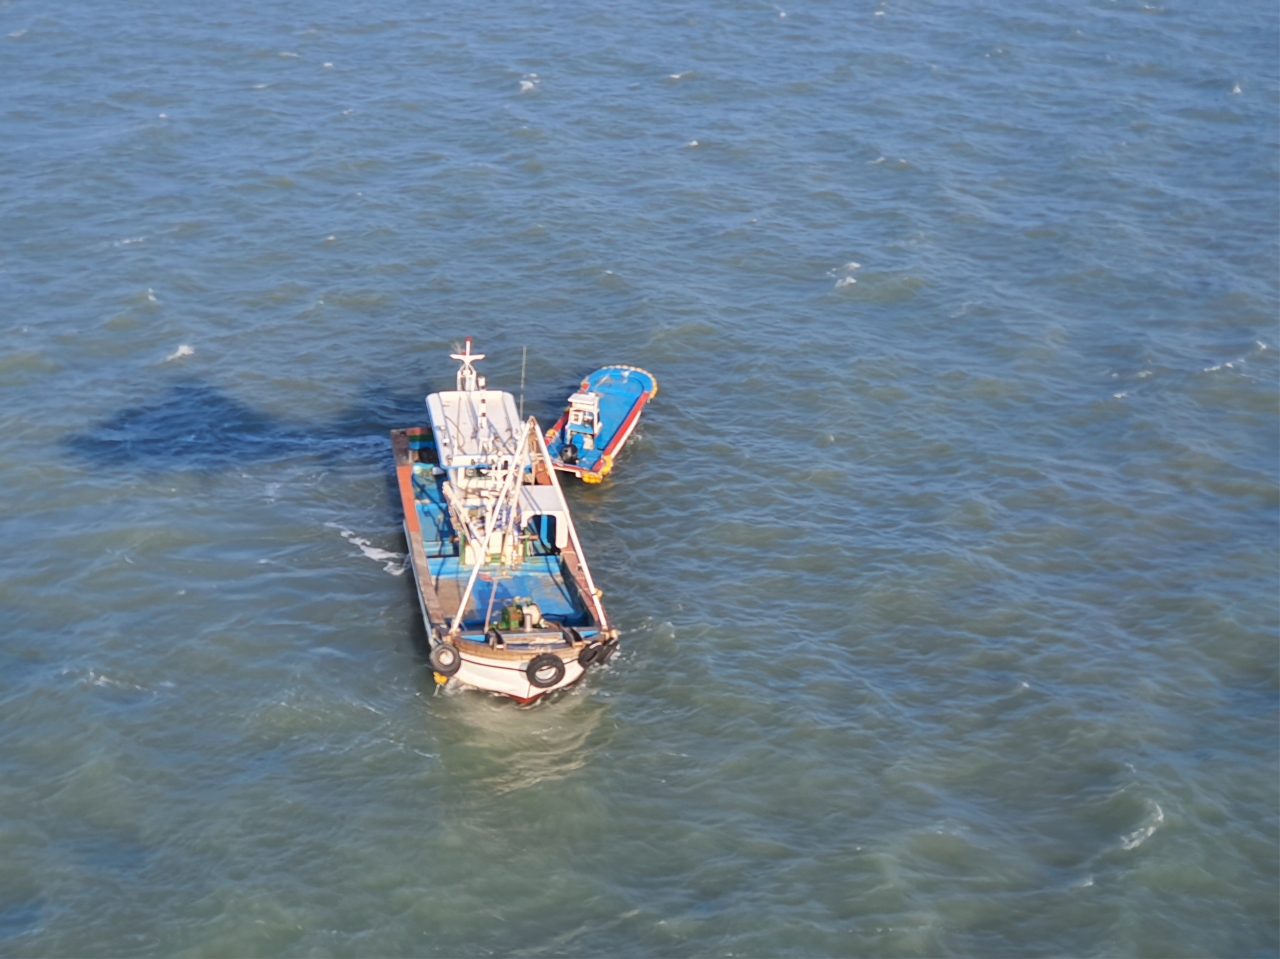 여수 여자만 해상의 양식장 관리선에서 22일 실종된 승선원 2명이 인근 해상에서 숨진 채 발견됐다. 사고선박 사진.